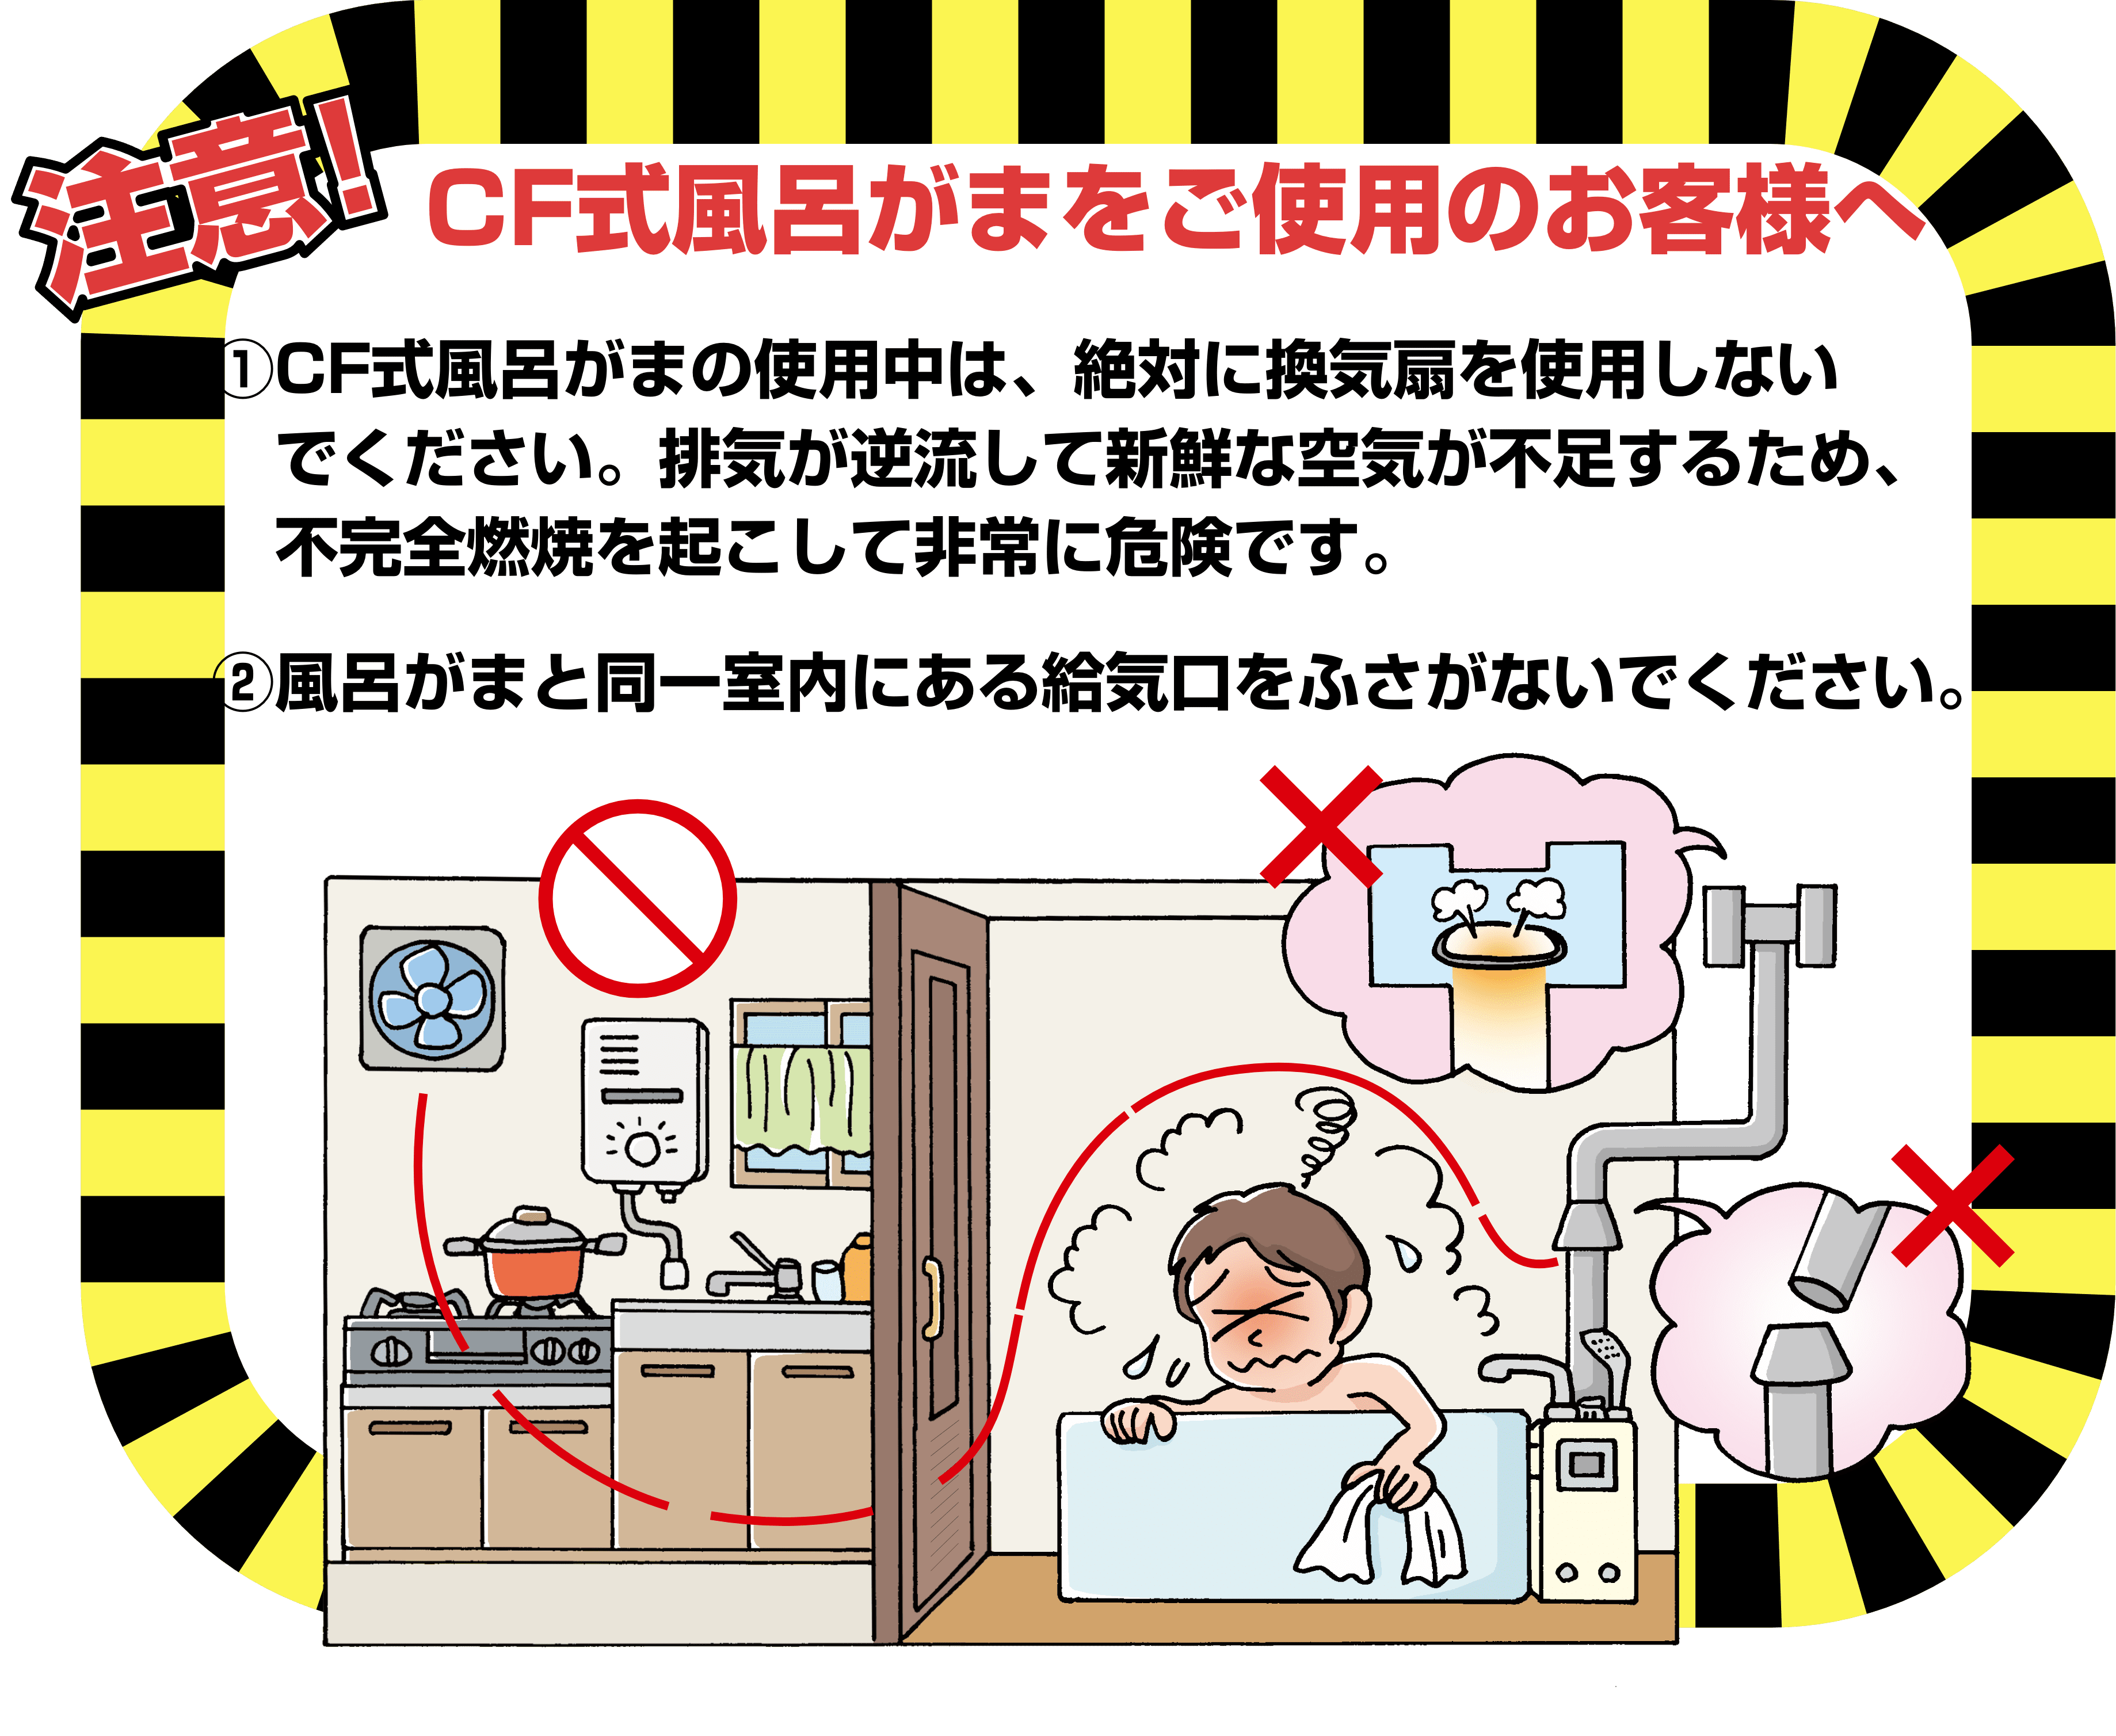 注意！　CF式風呂がまをご使用のお客様へ　1.CF式風呂がまの使用中は、絶対に換気扇を使用しないでください。排気が逆流して新鮮な空気が不足するため、不完全燃焼を起こして非常に危険です。　2.風呂がまと同一室内にある給気口をふさがないでください。